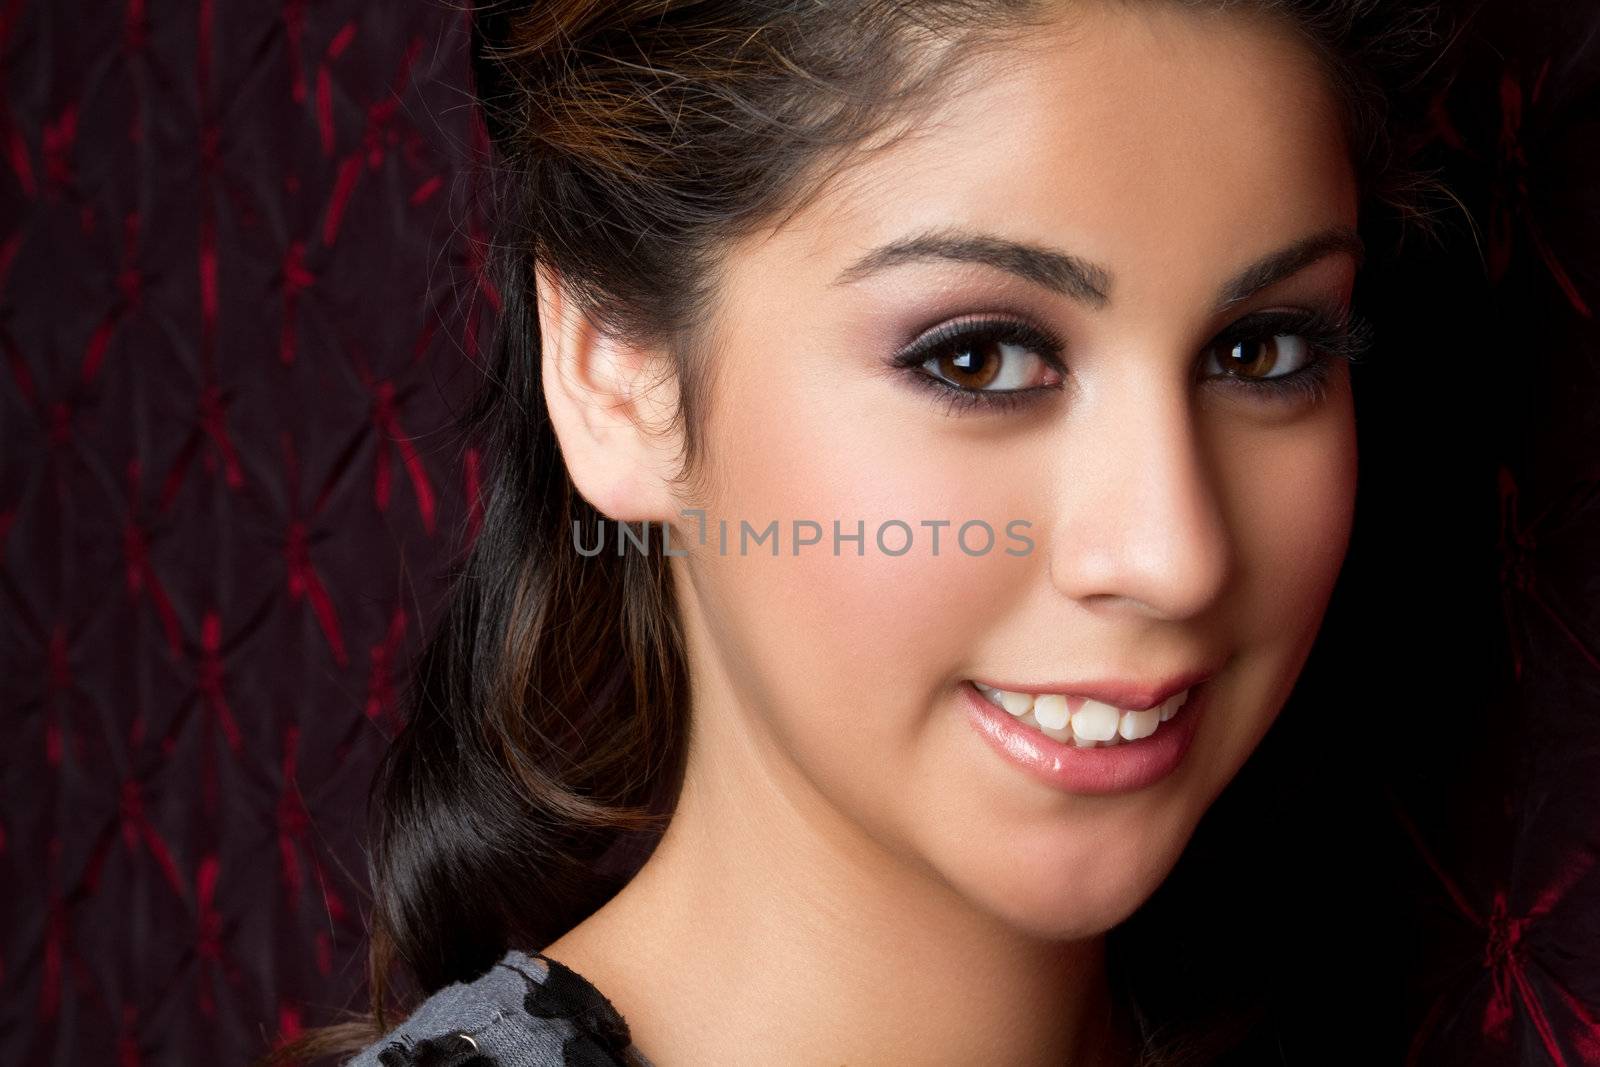 Beautiful smiling young woman closeup